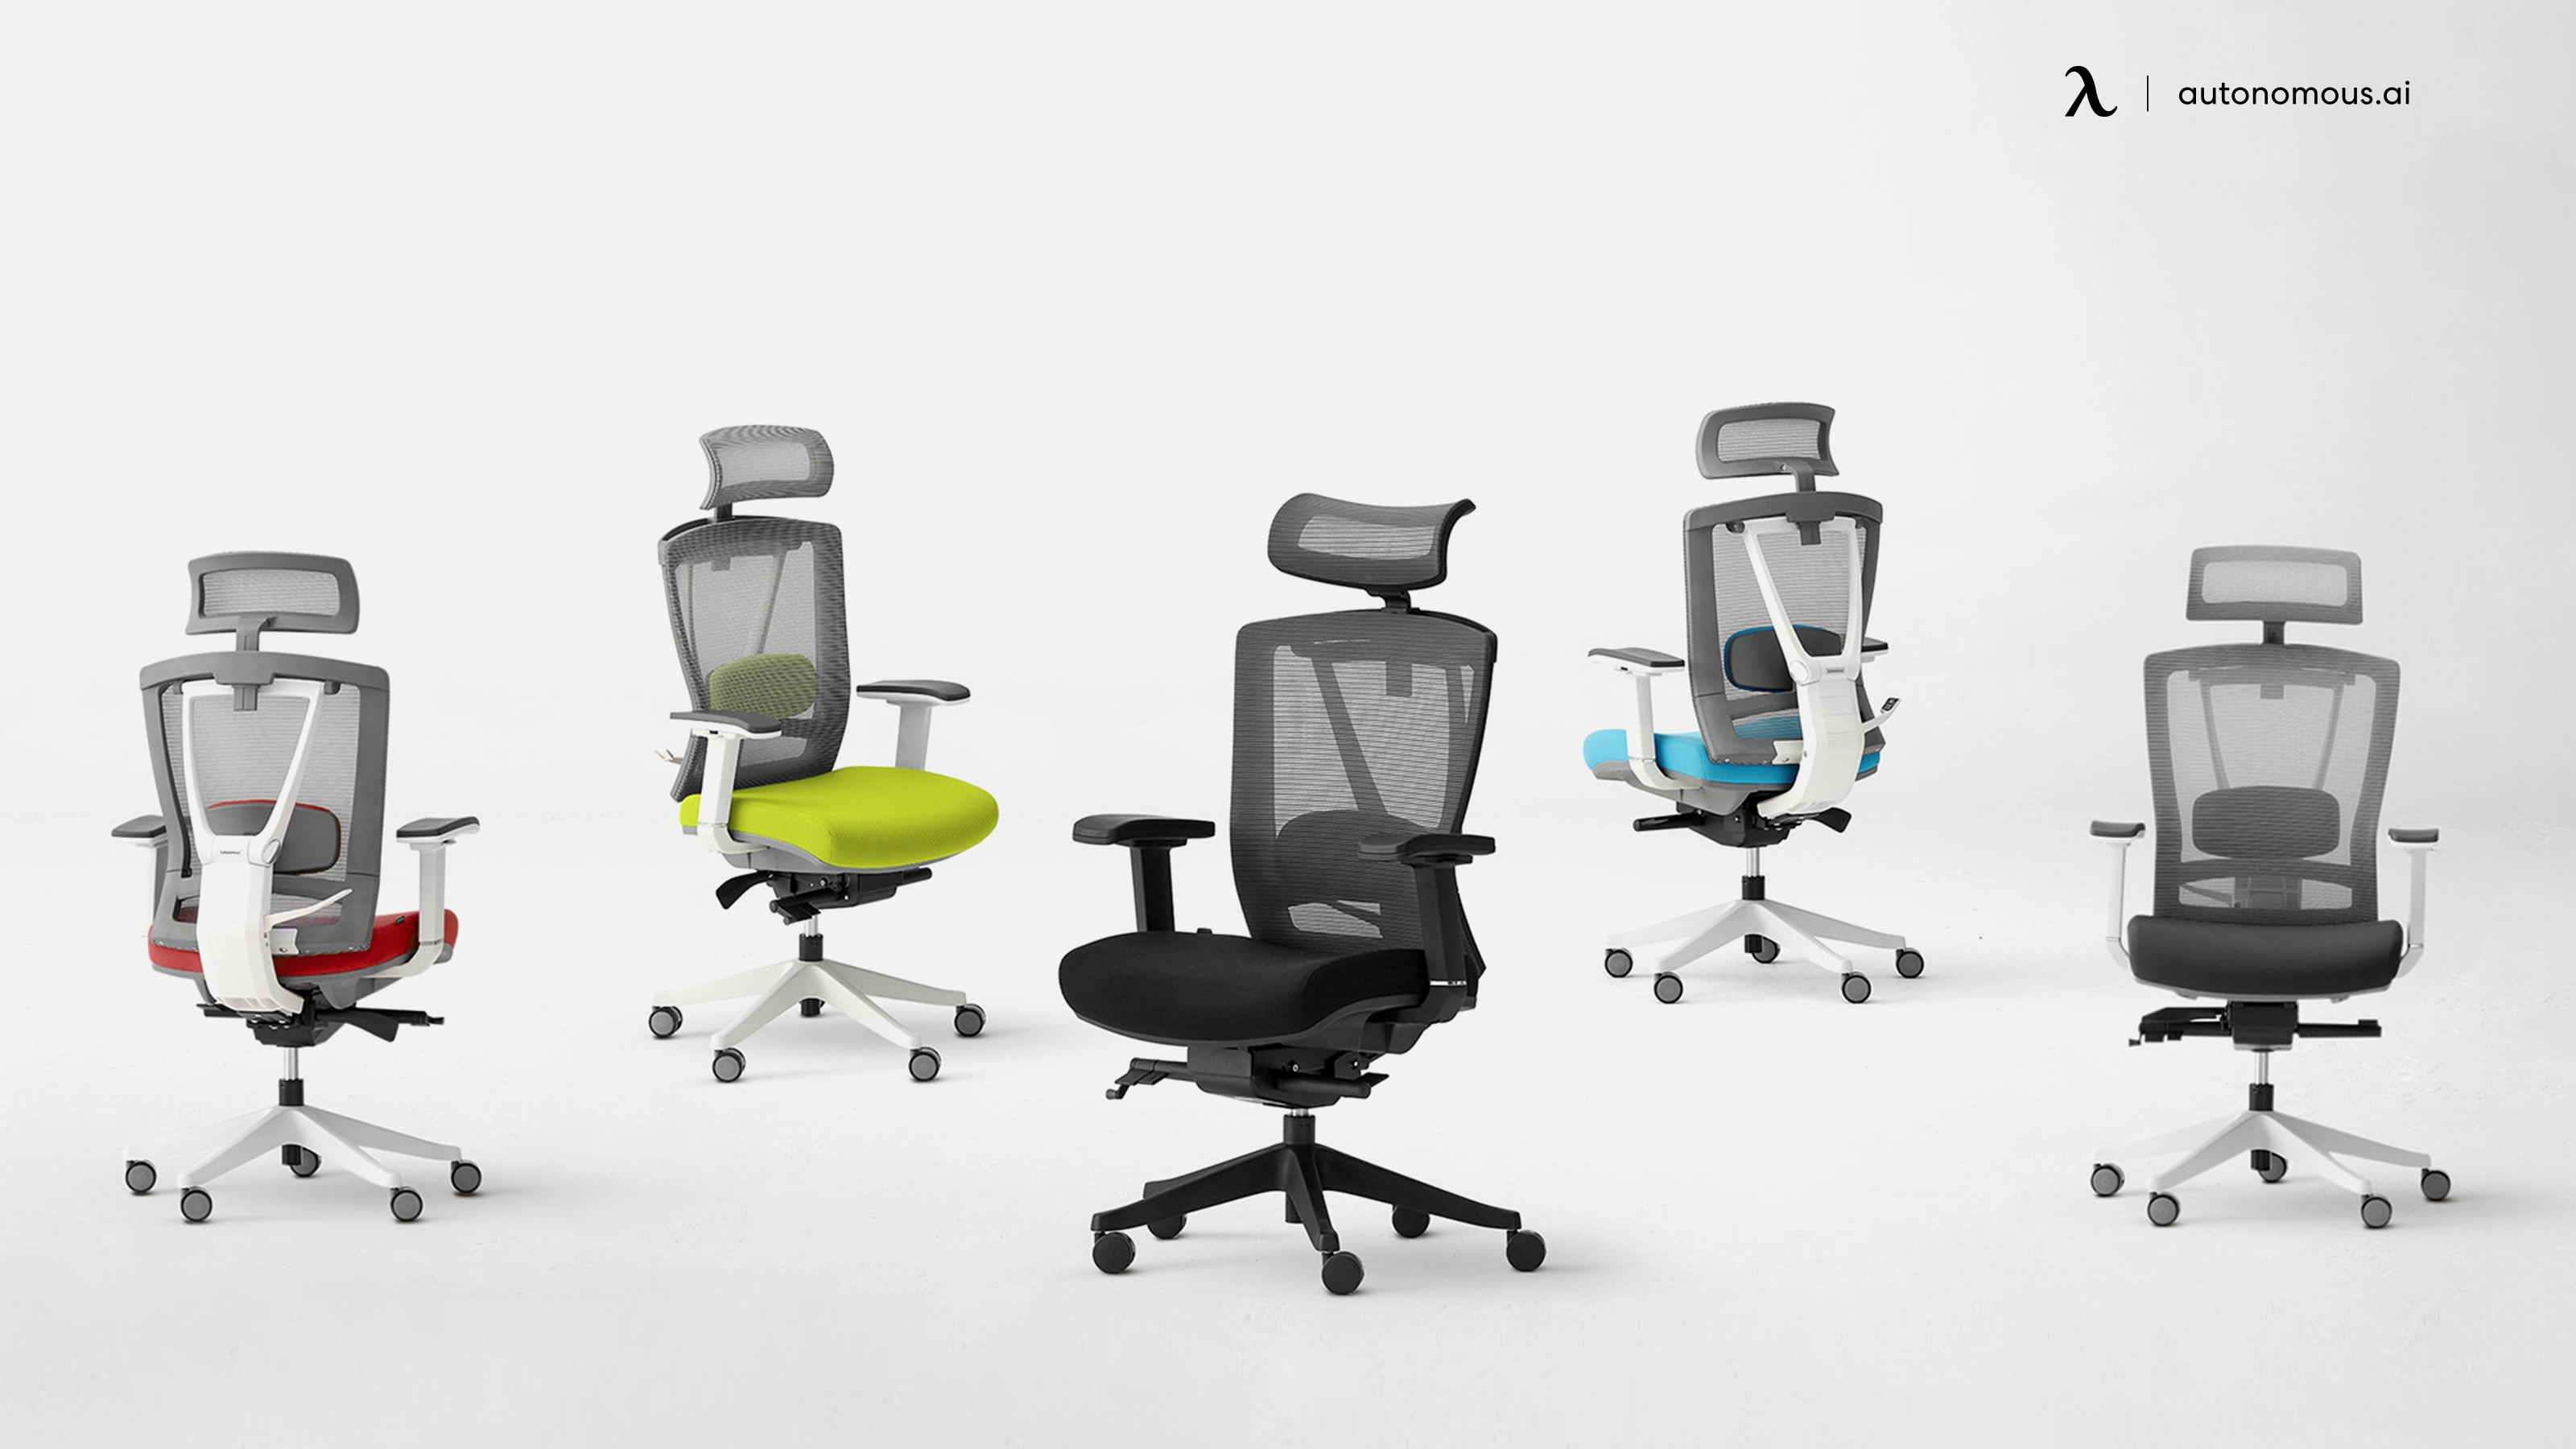 ErgoChair Pro - high back ergonomic chair